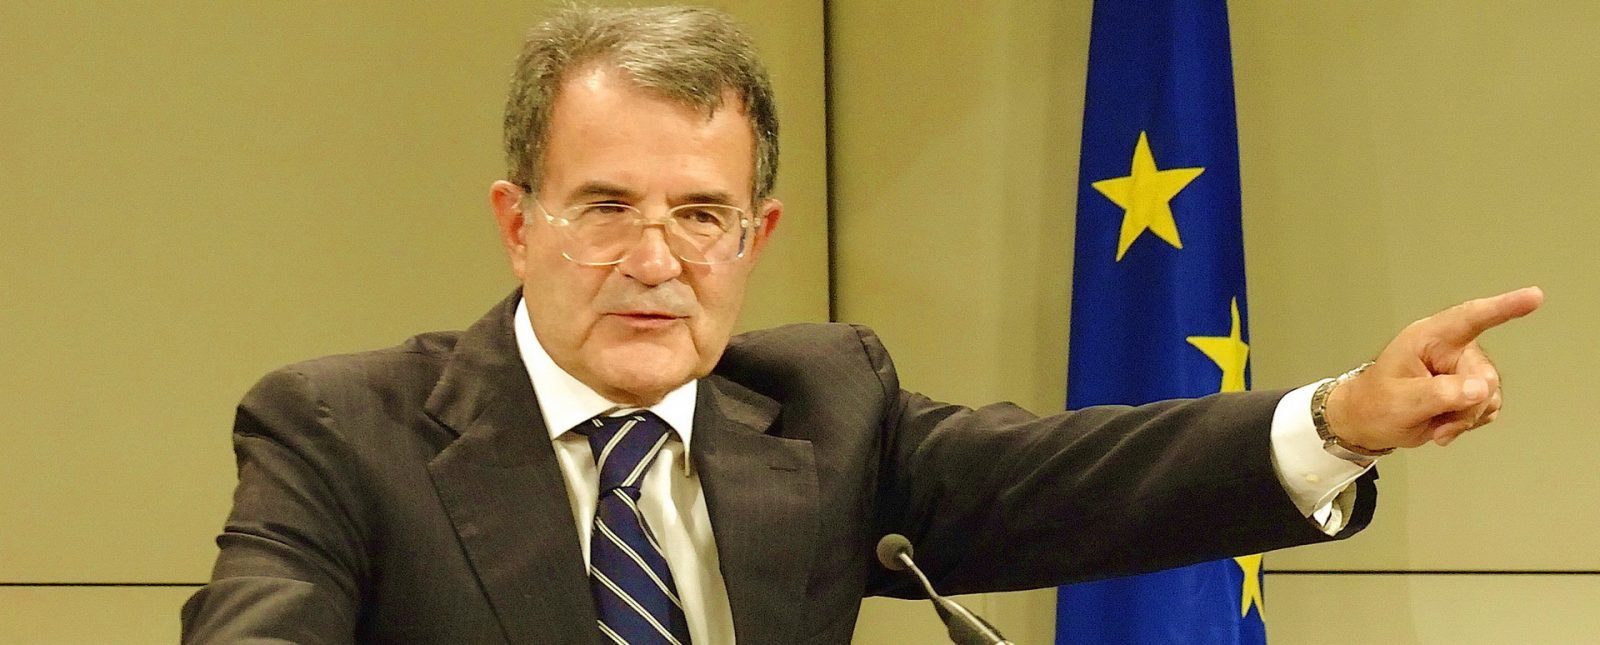 Романо Проди — итальянский левоцентристский политик, премьер-министр Италии (1996-1998, 2006-2008). Между двумя премьерствами был президентом Еврокомиссии (1999-2004). Занимал должность спецпосланника Генерального секретаря ООН по региону Сахеля. С 2008 года почётный доктор МГИМО...